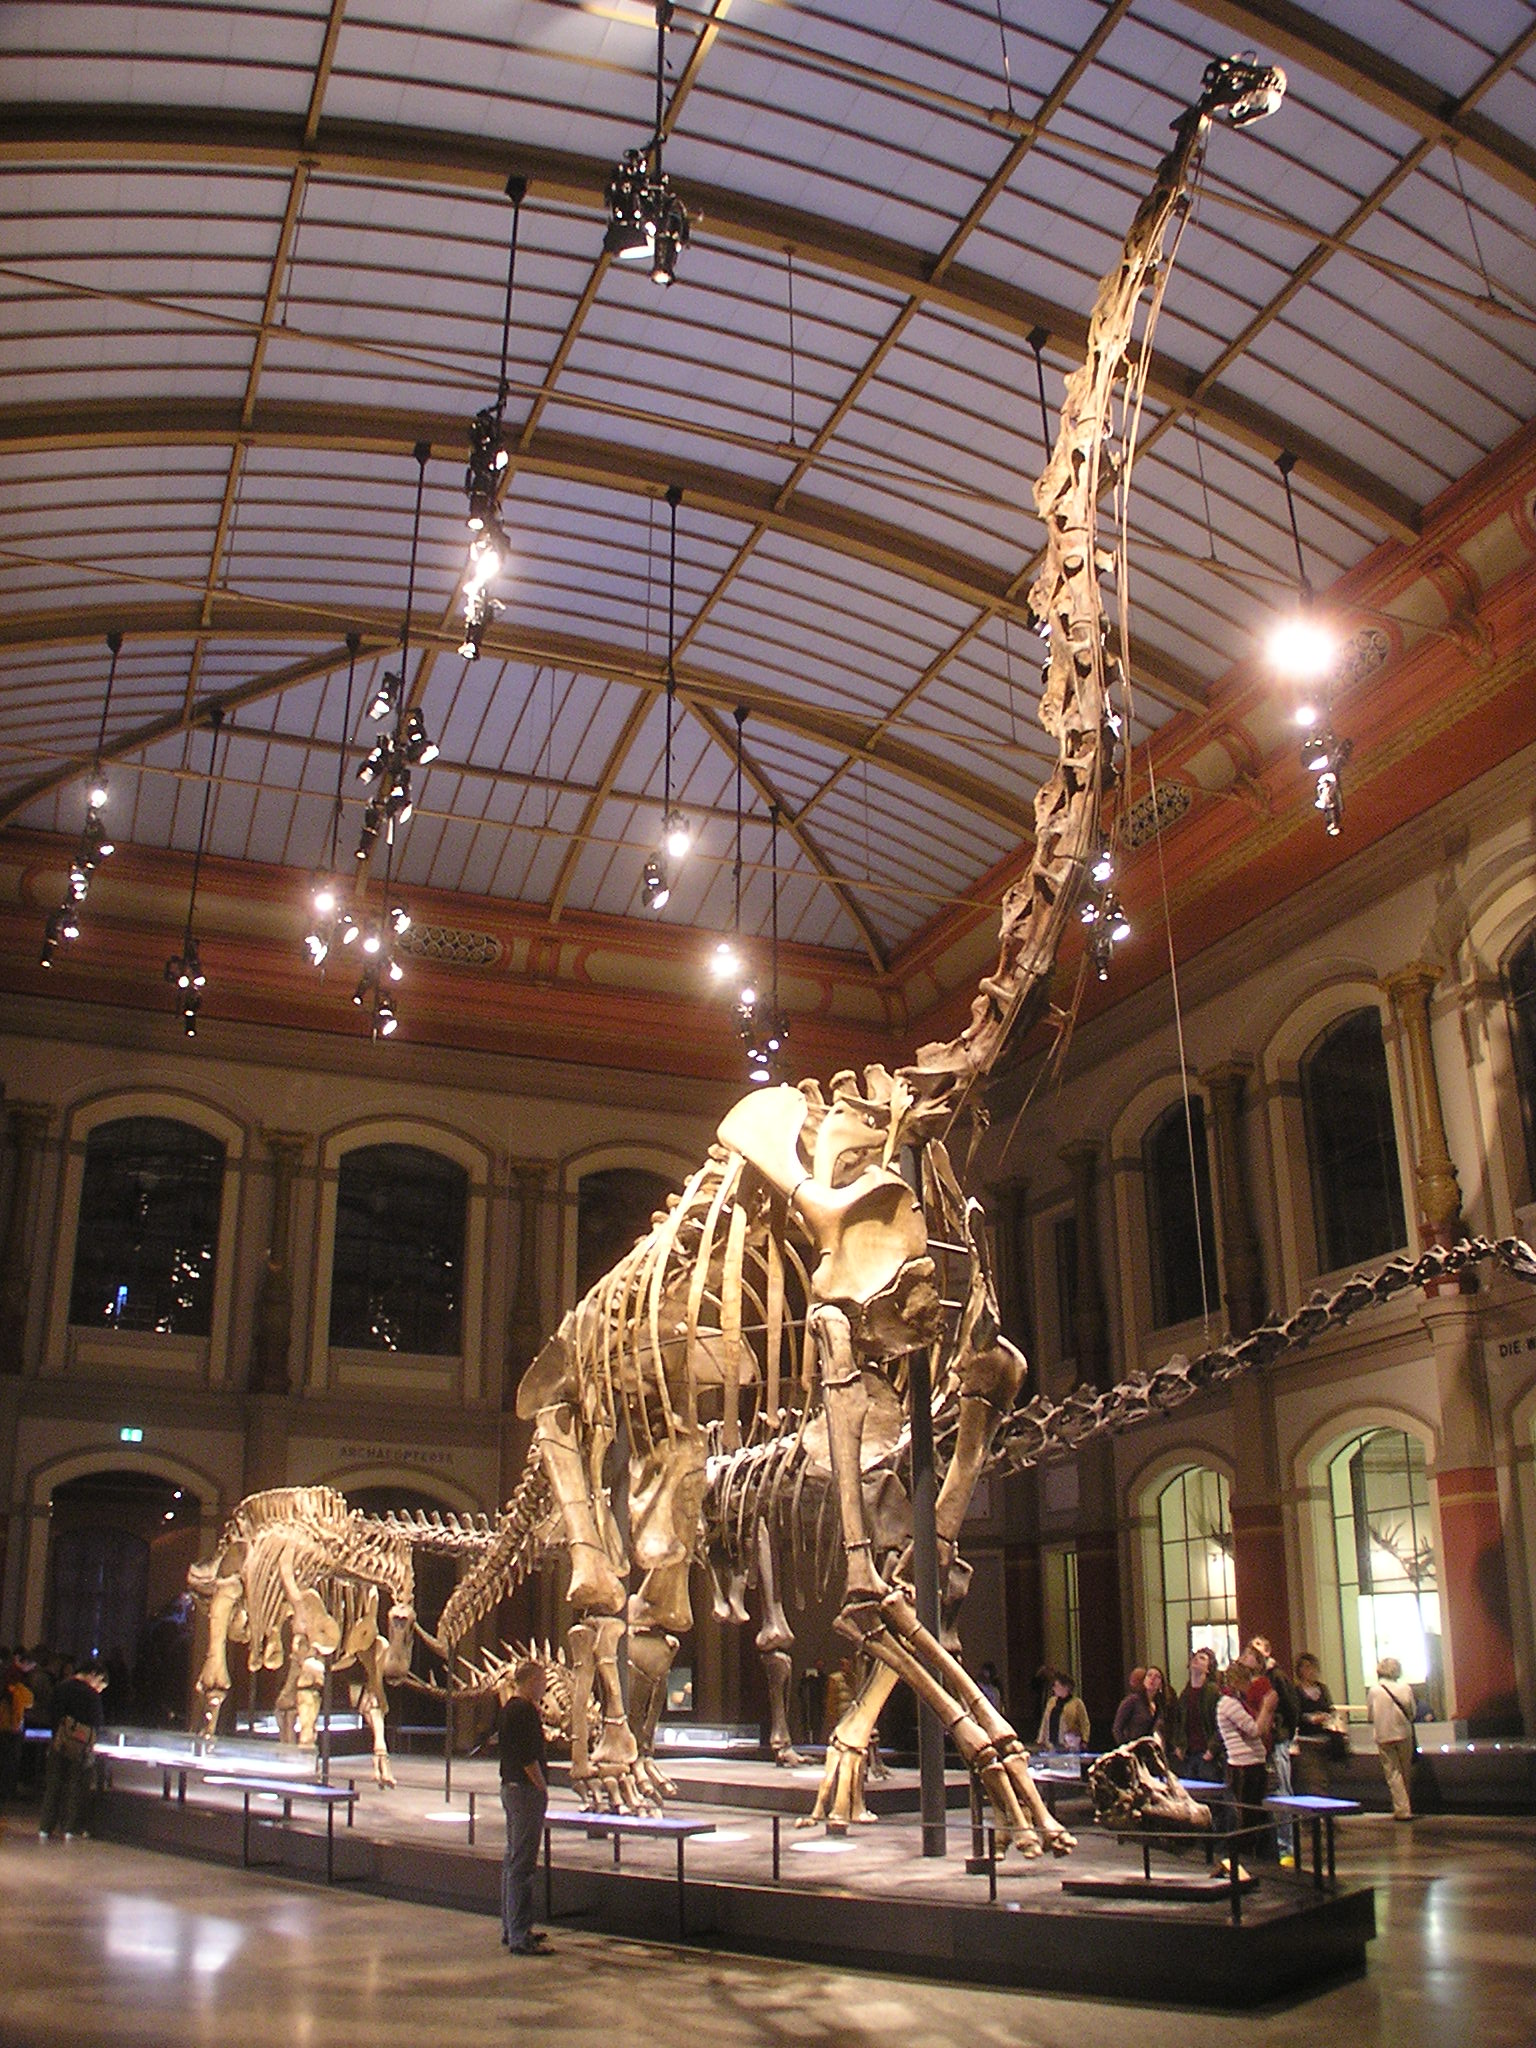 Brachiosaurus | Fossil Wiki | FANDOM powered by Wikia